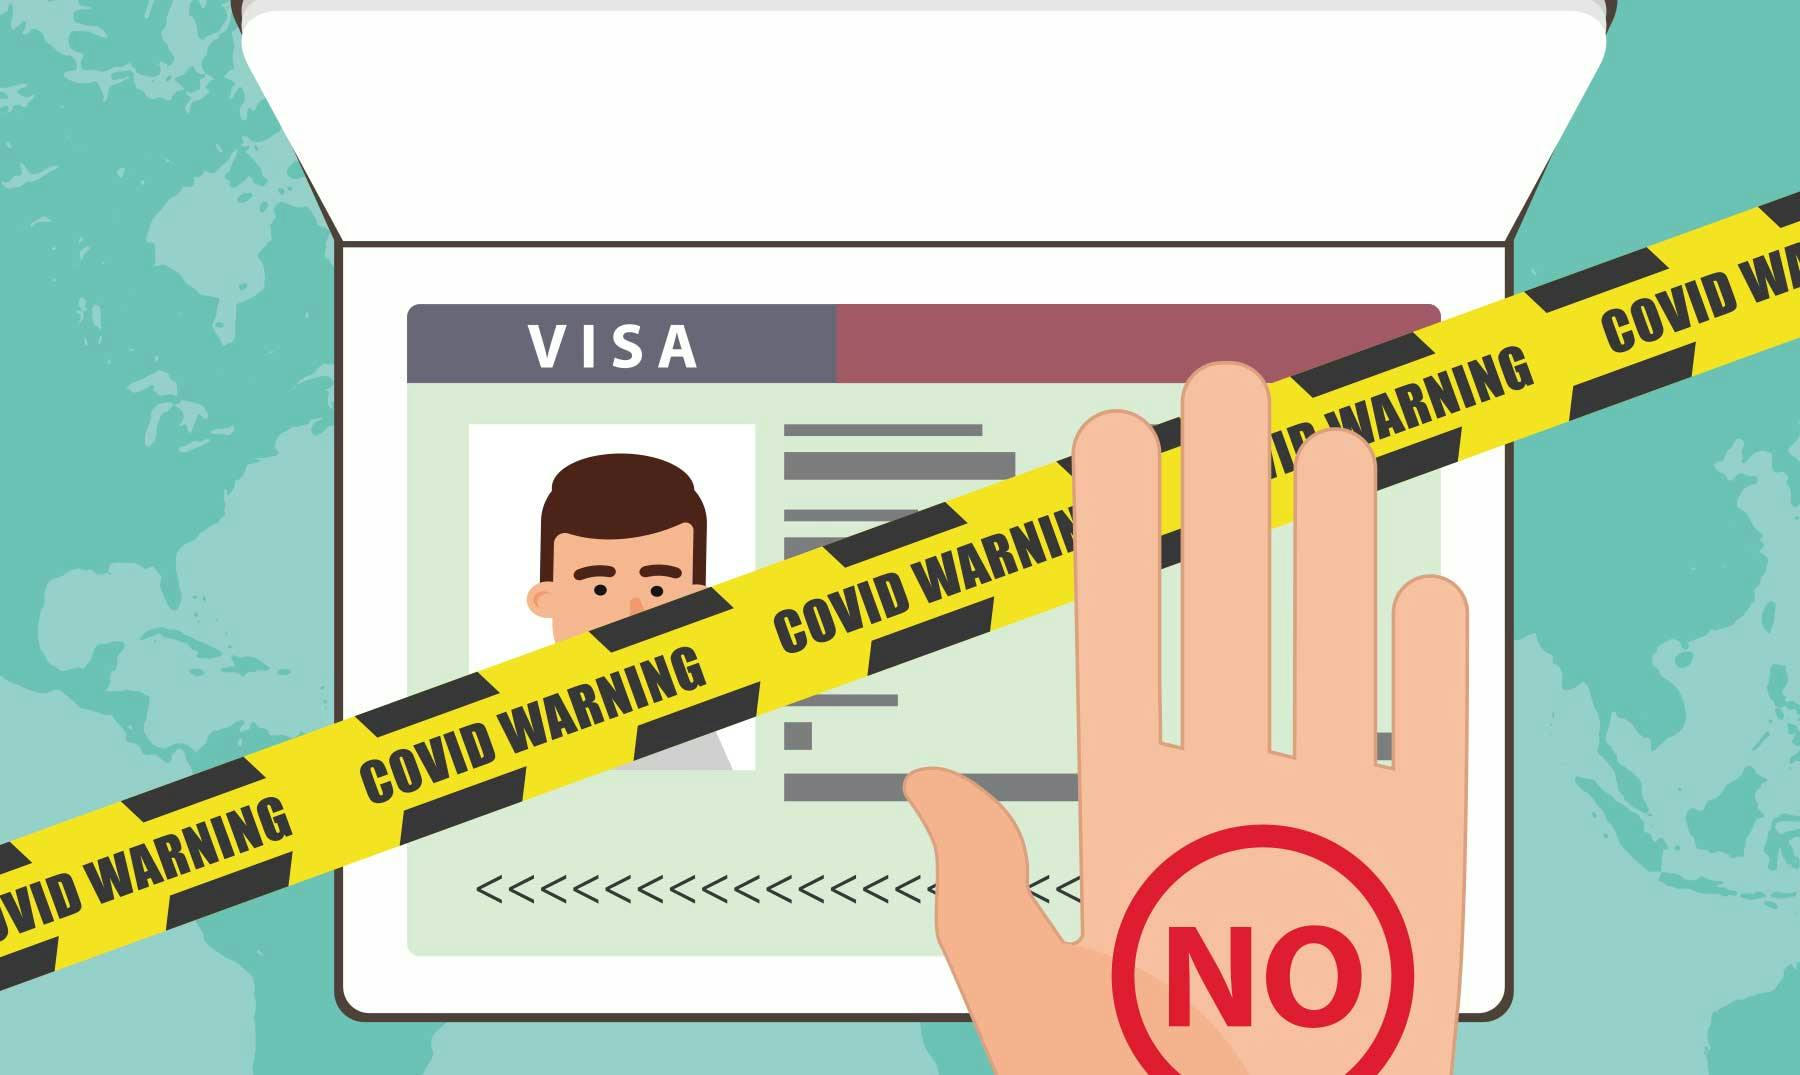 Prohibiciones de viaje y estatus de visas en Australia por el Covid